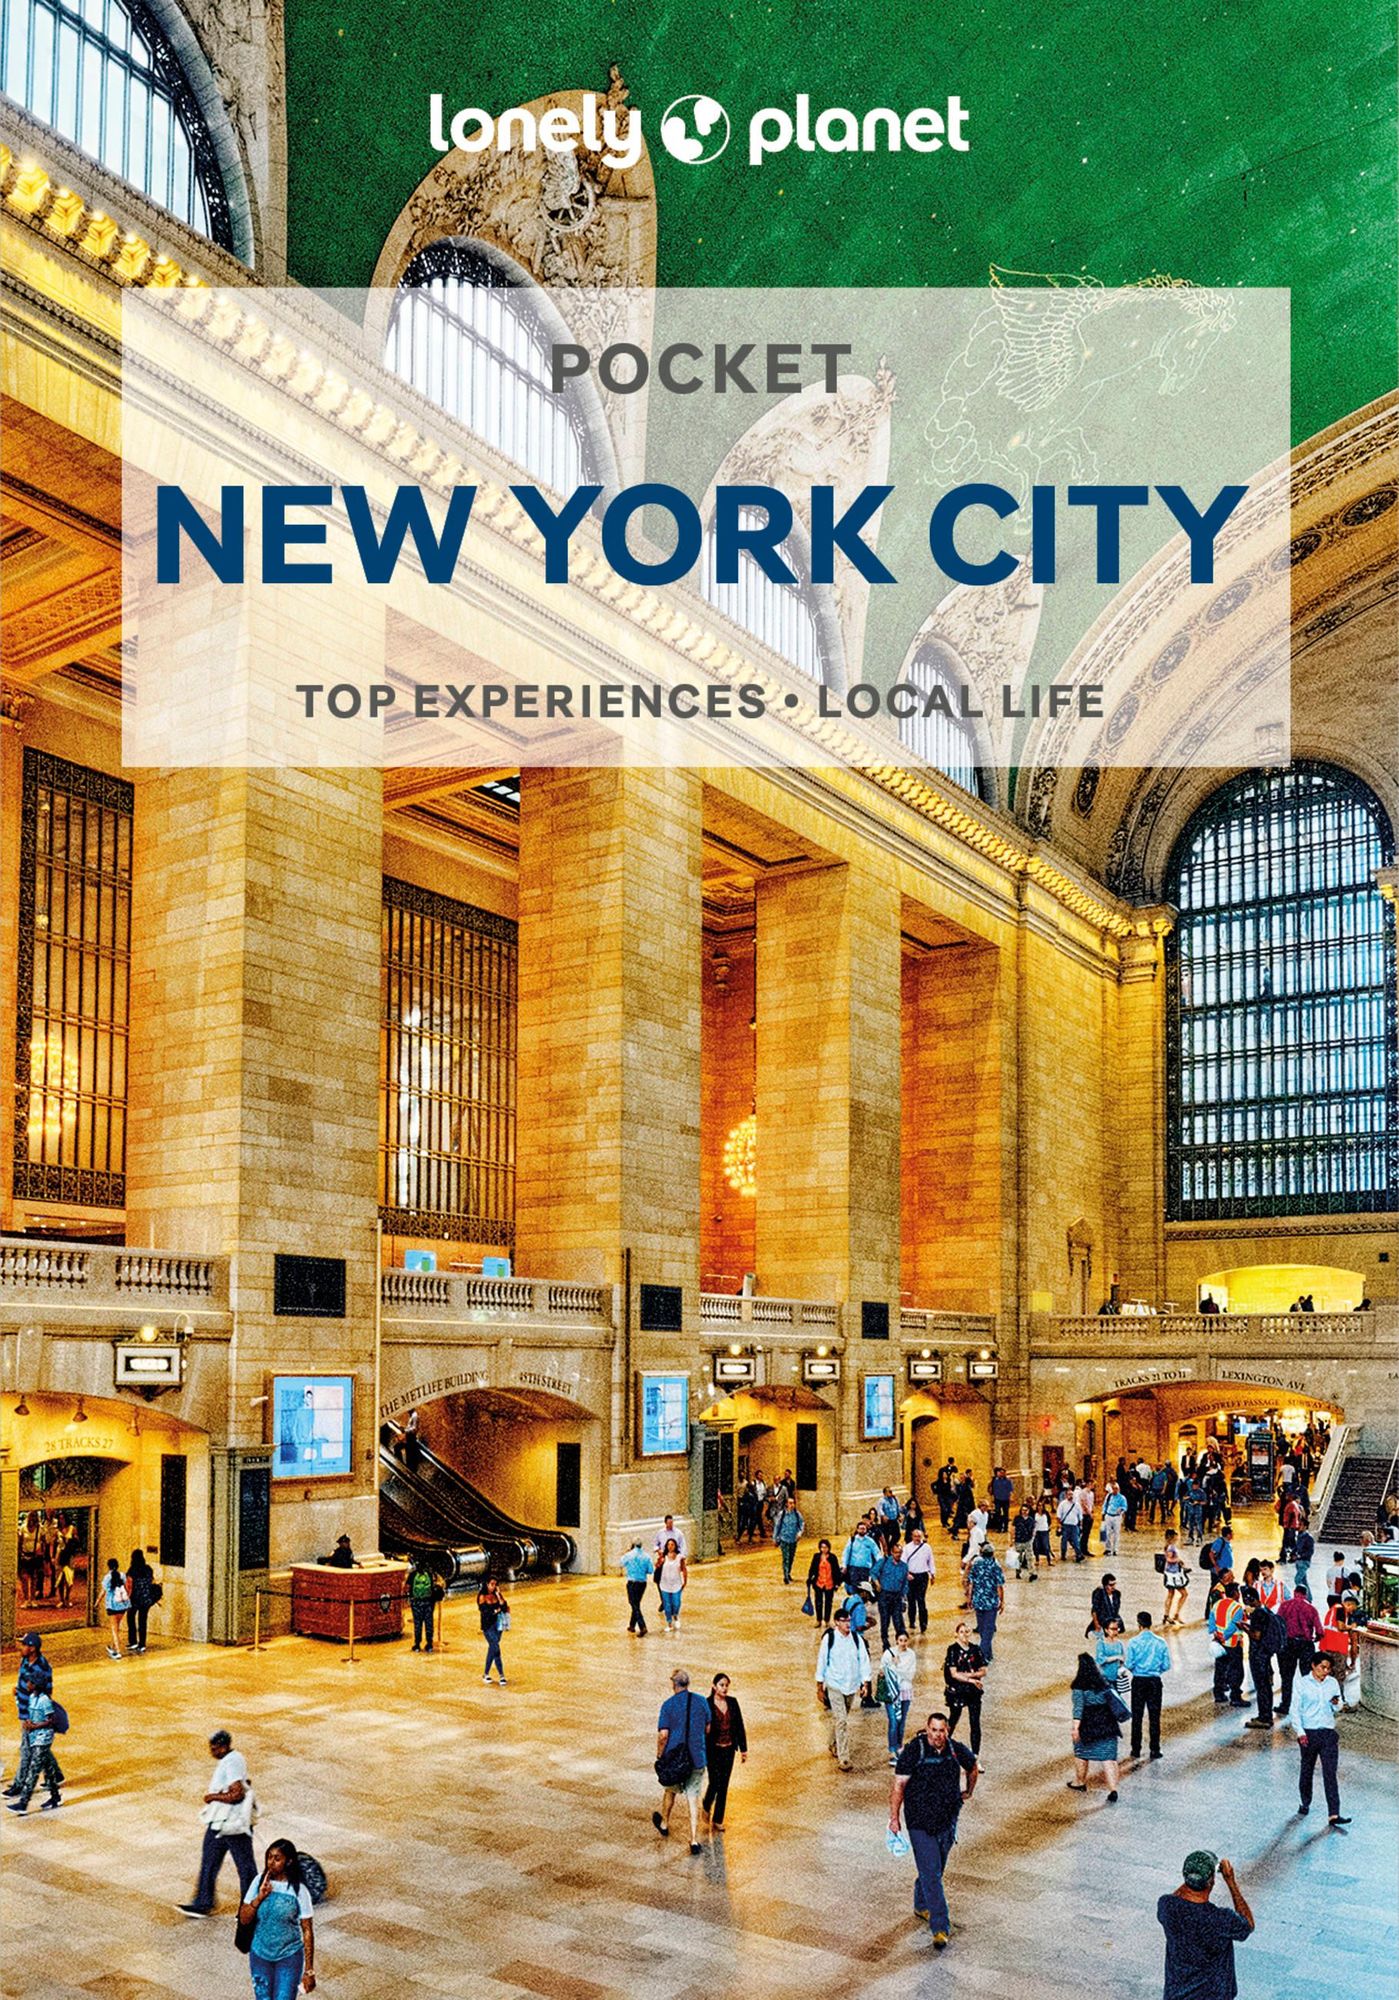 City'　Pocket　Lonely　York　Garry'　Planet　'John　'Taschenbuch'　New　von　'978-1-83869-192-9'